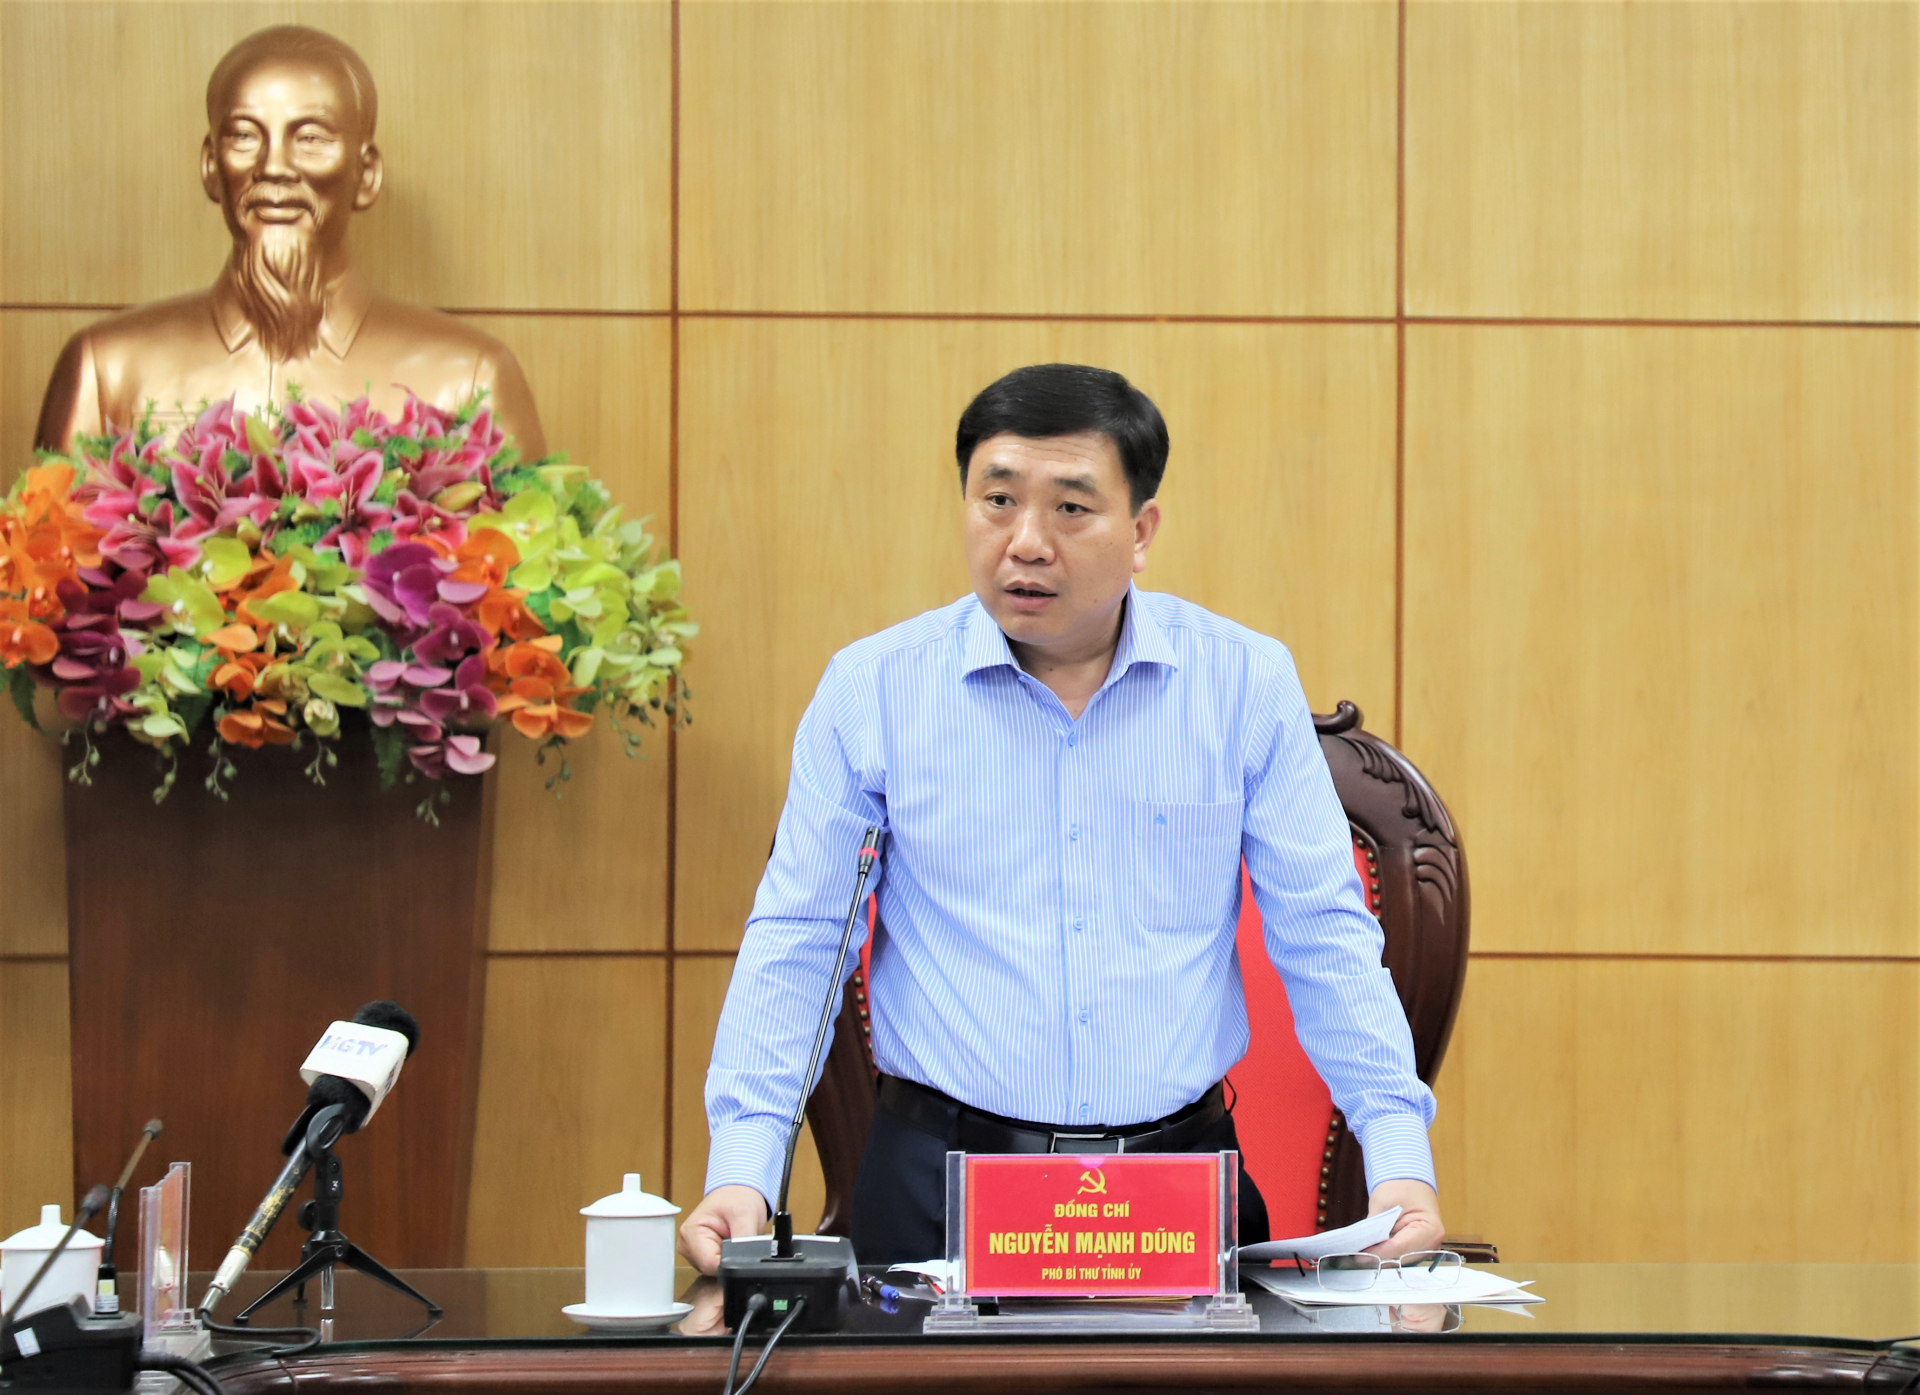 Phó Bí thư Tỉnh ủy Nguyễn Mạnh Dũng phát biểu kết luận buổi họp.